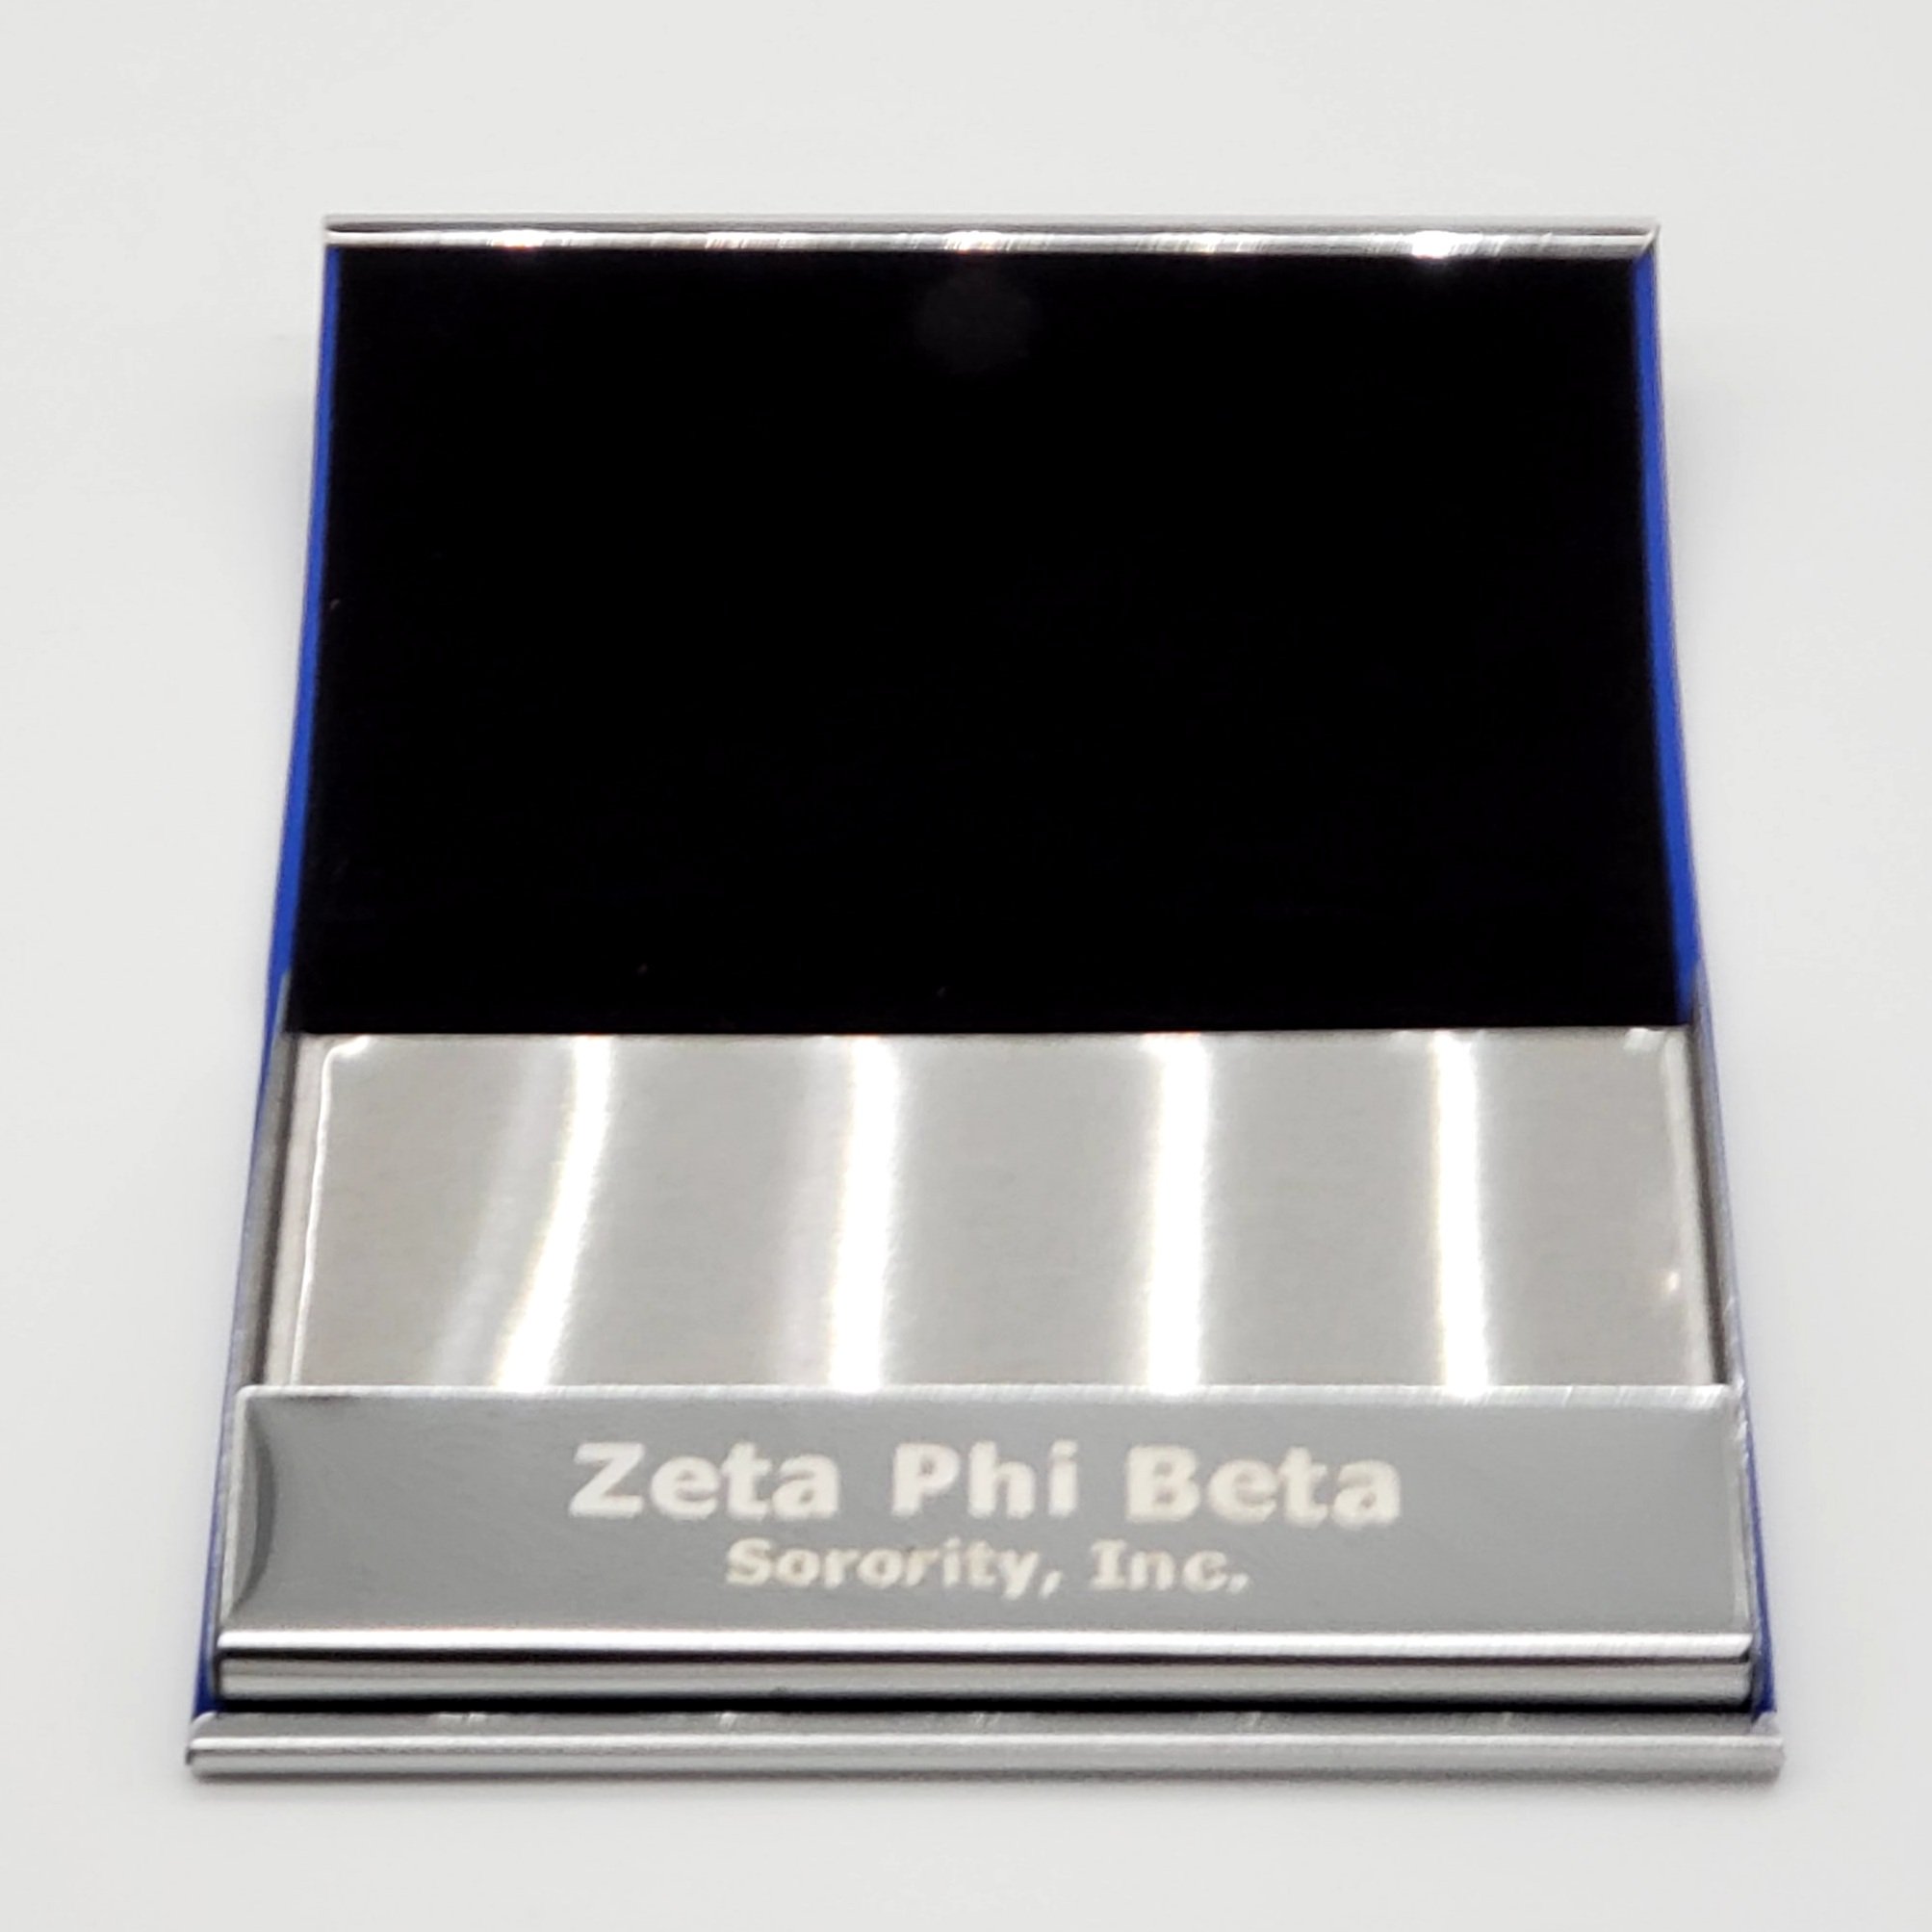 zeta phi beta business cards 1